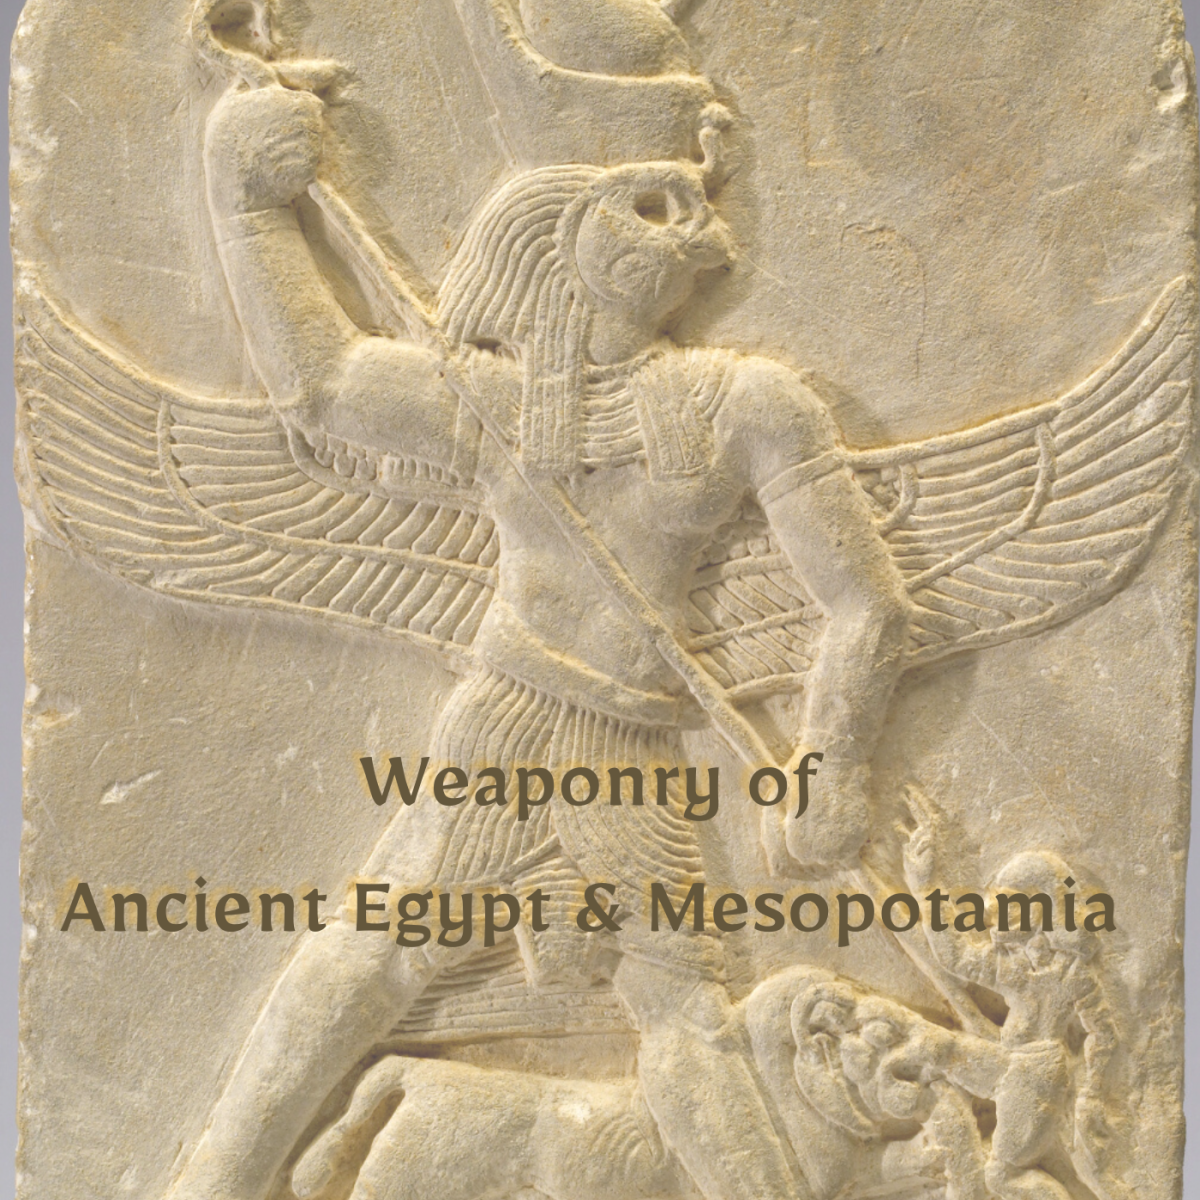 用矛刺敌人的埃及神荷鲁斯。这个雕刻是在公元前332年左右。